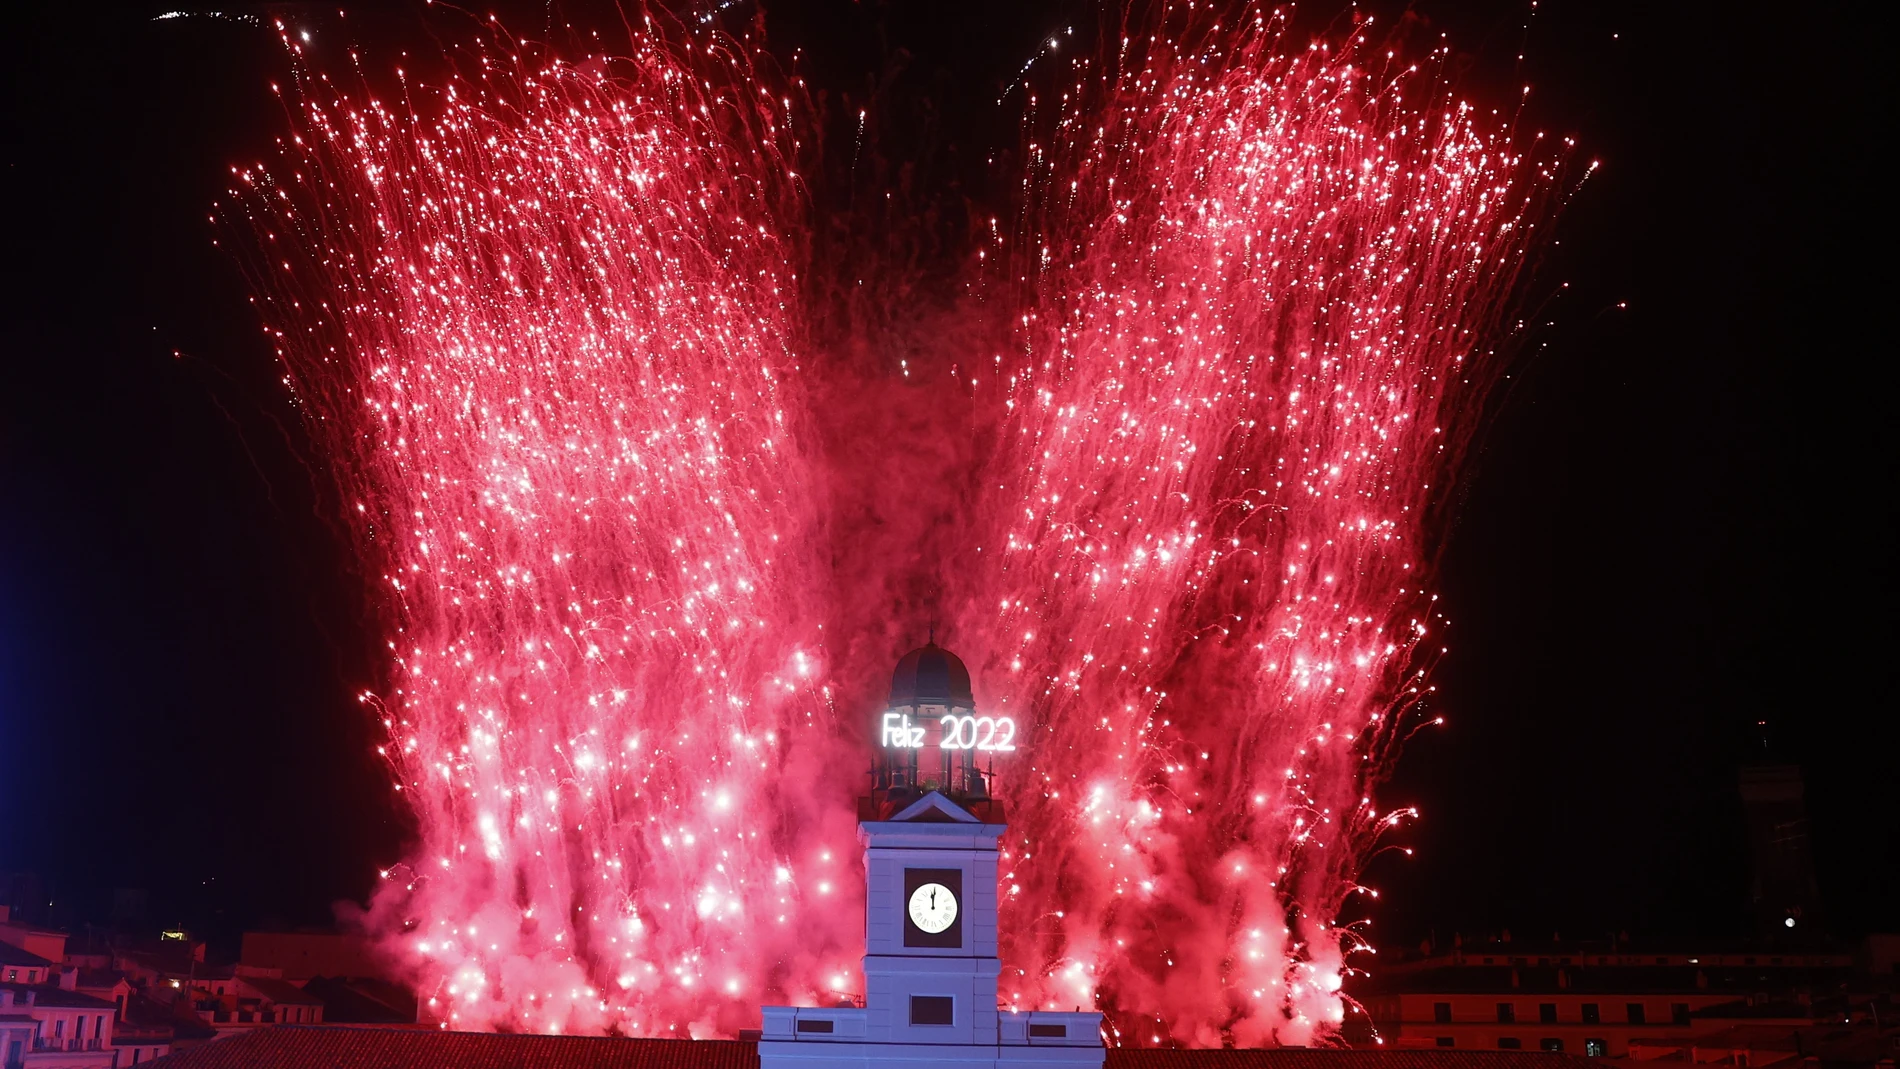 Las campanas de la torre del reloj de la Real Casa de Correos, ubicada en la Puerta del Sol, anuncian el Año Nuevo 2022